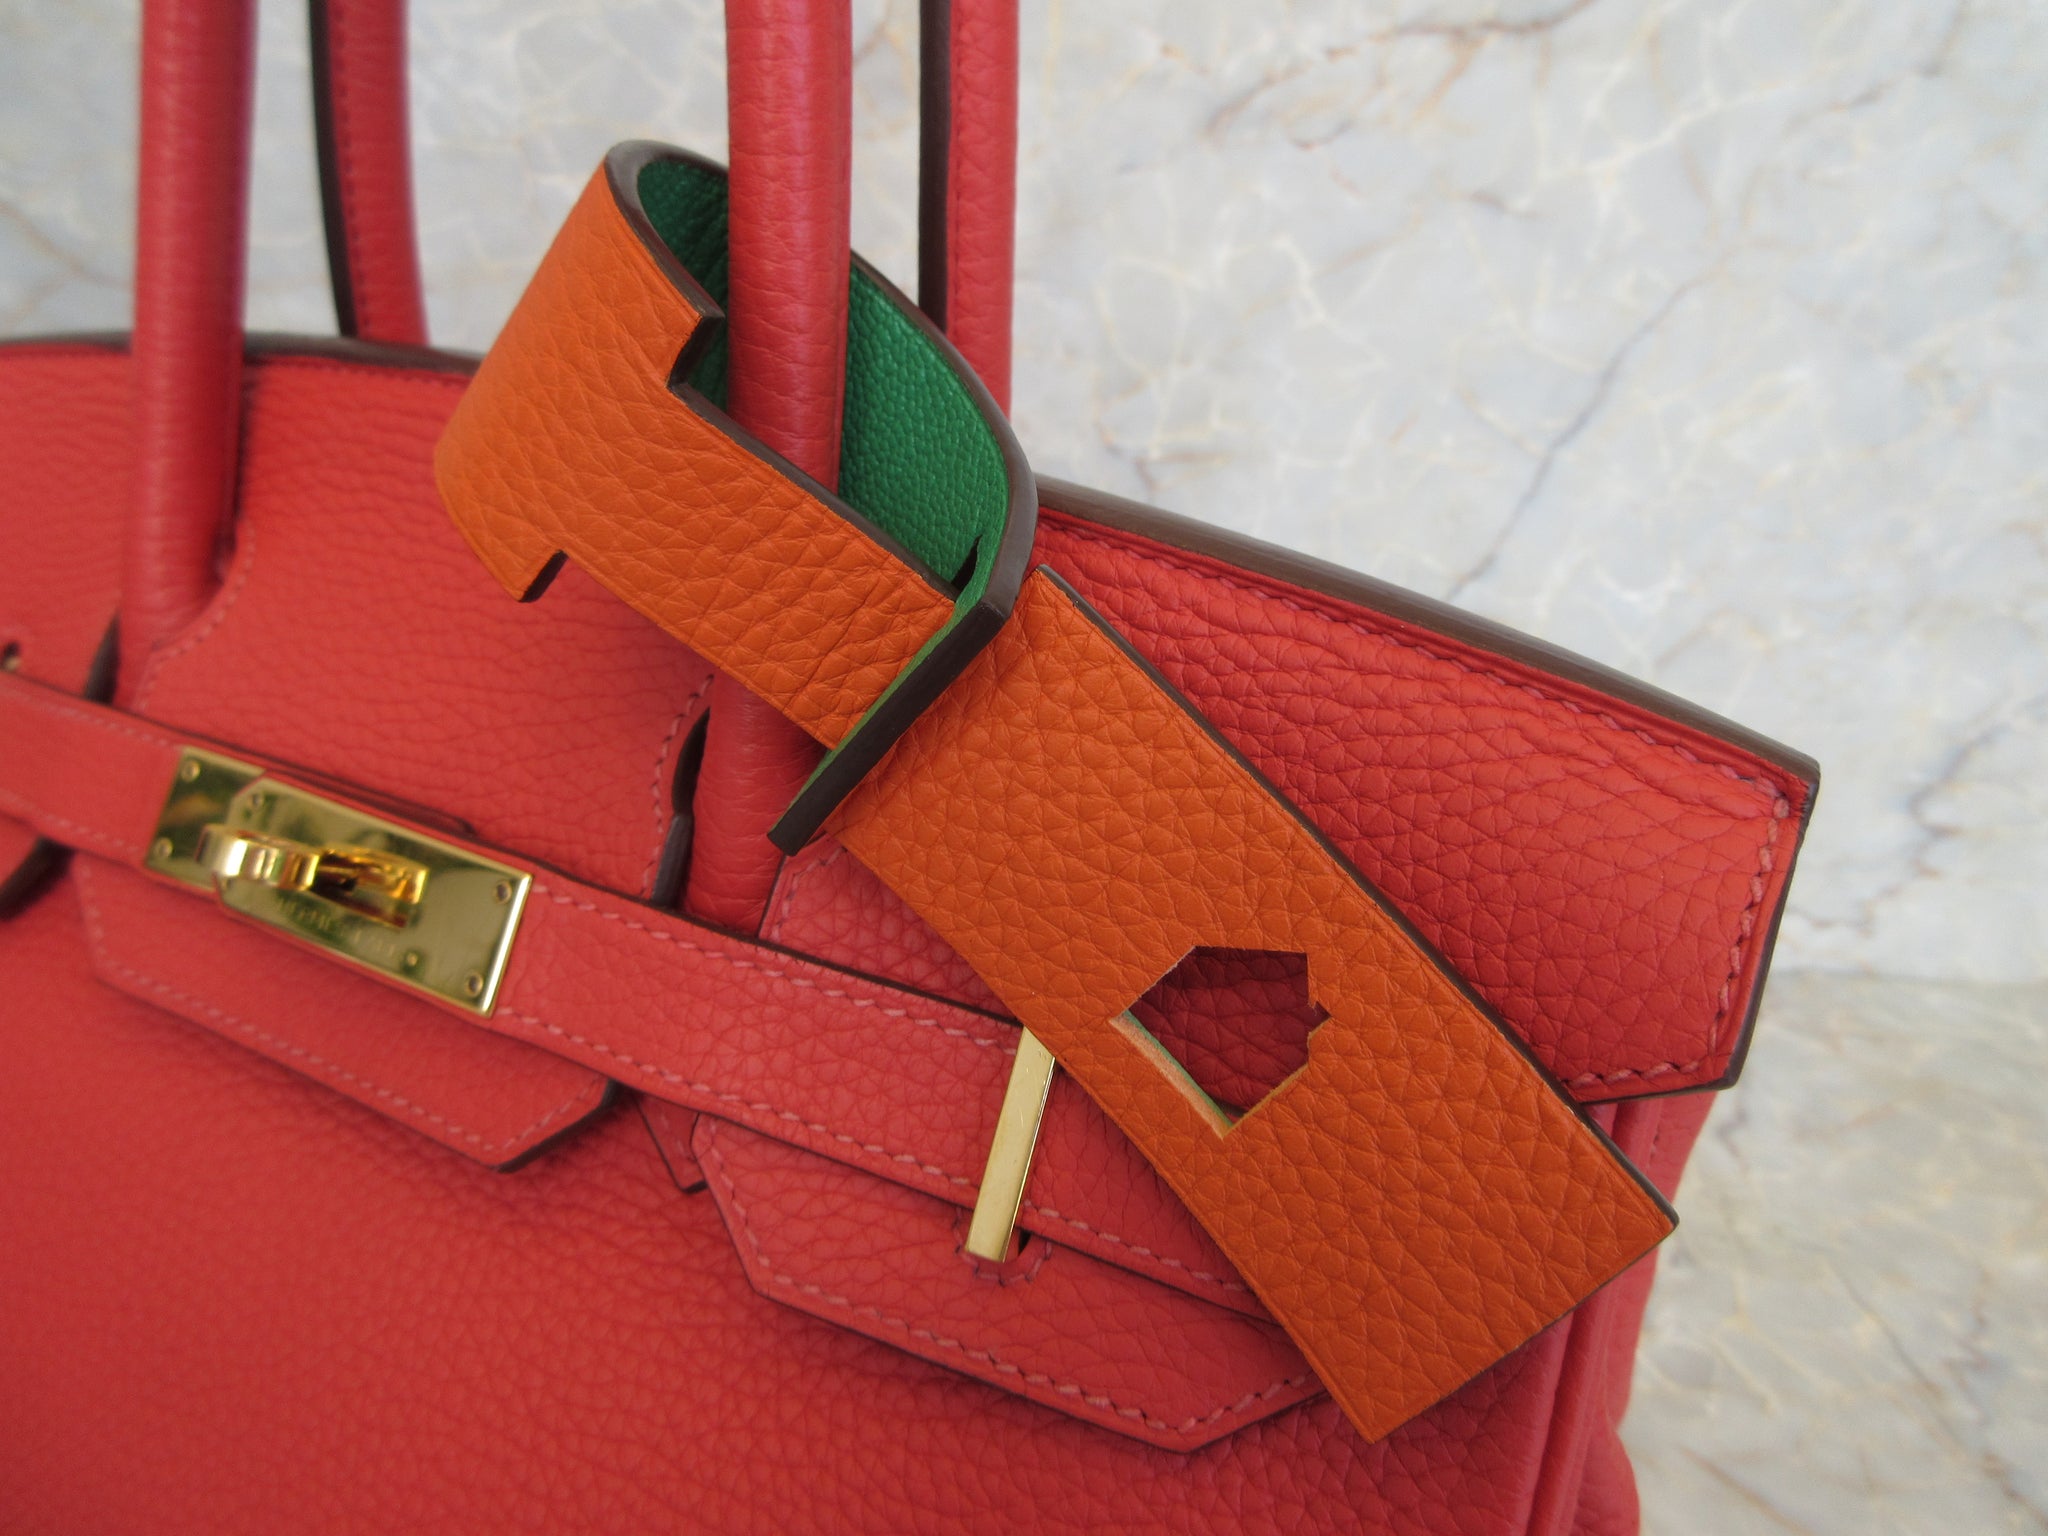 HERMES Petit h Luggage tag Clemence leather Orange poppy/Bambou